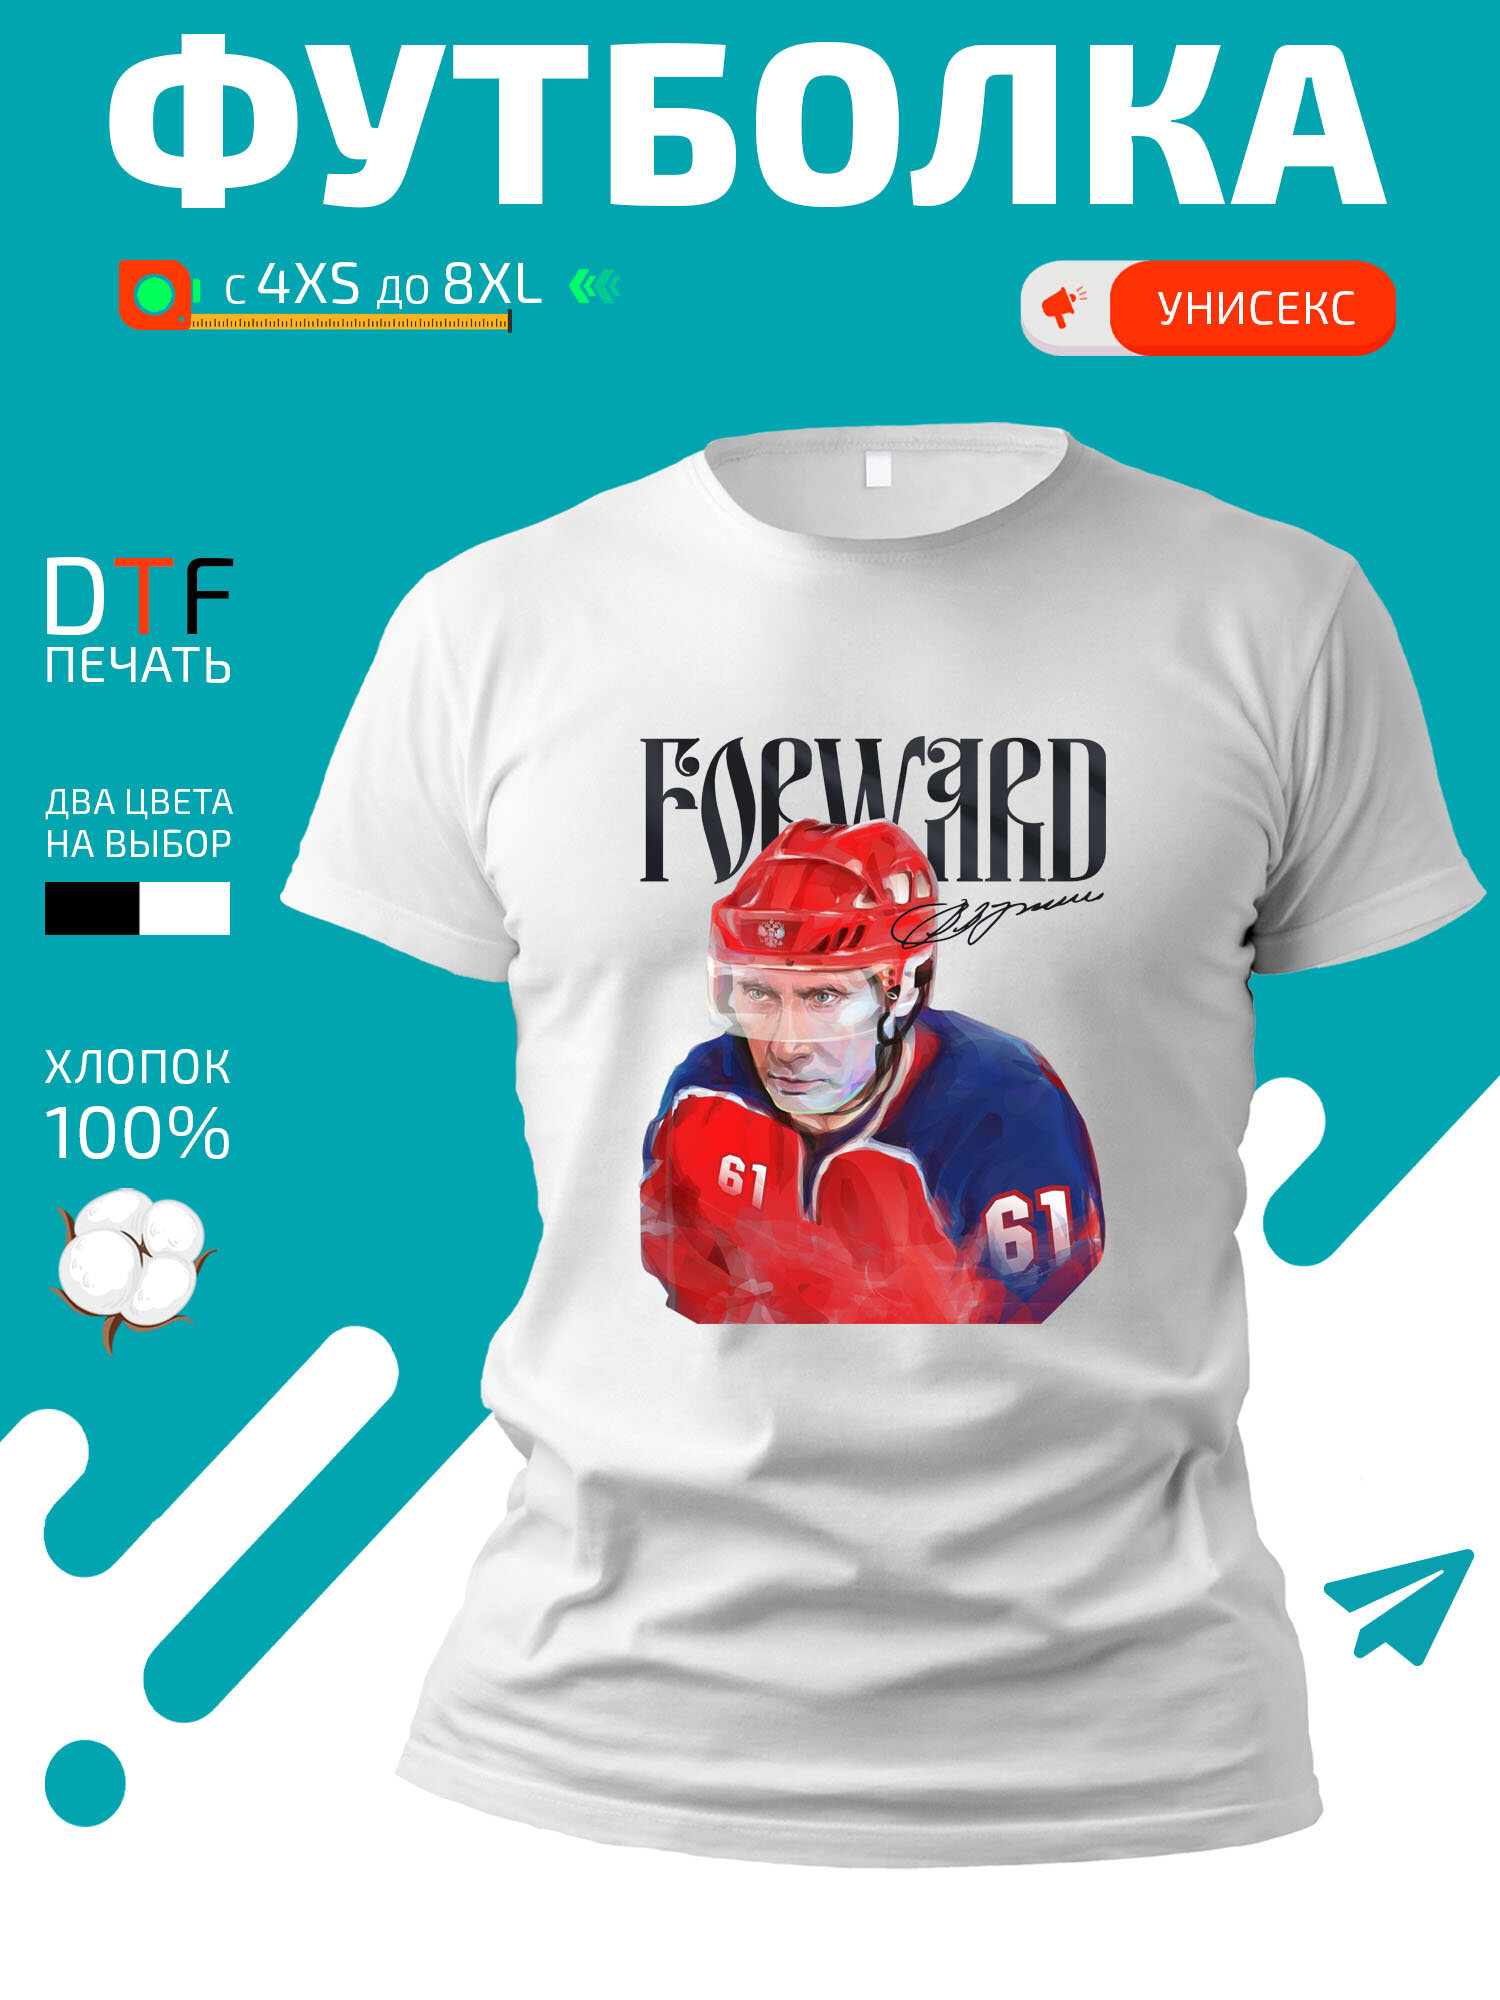 Футболка Путин в хоккейной форме с подписью Forward